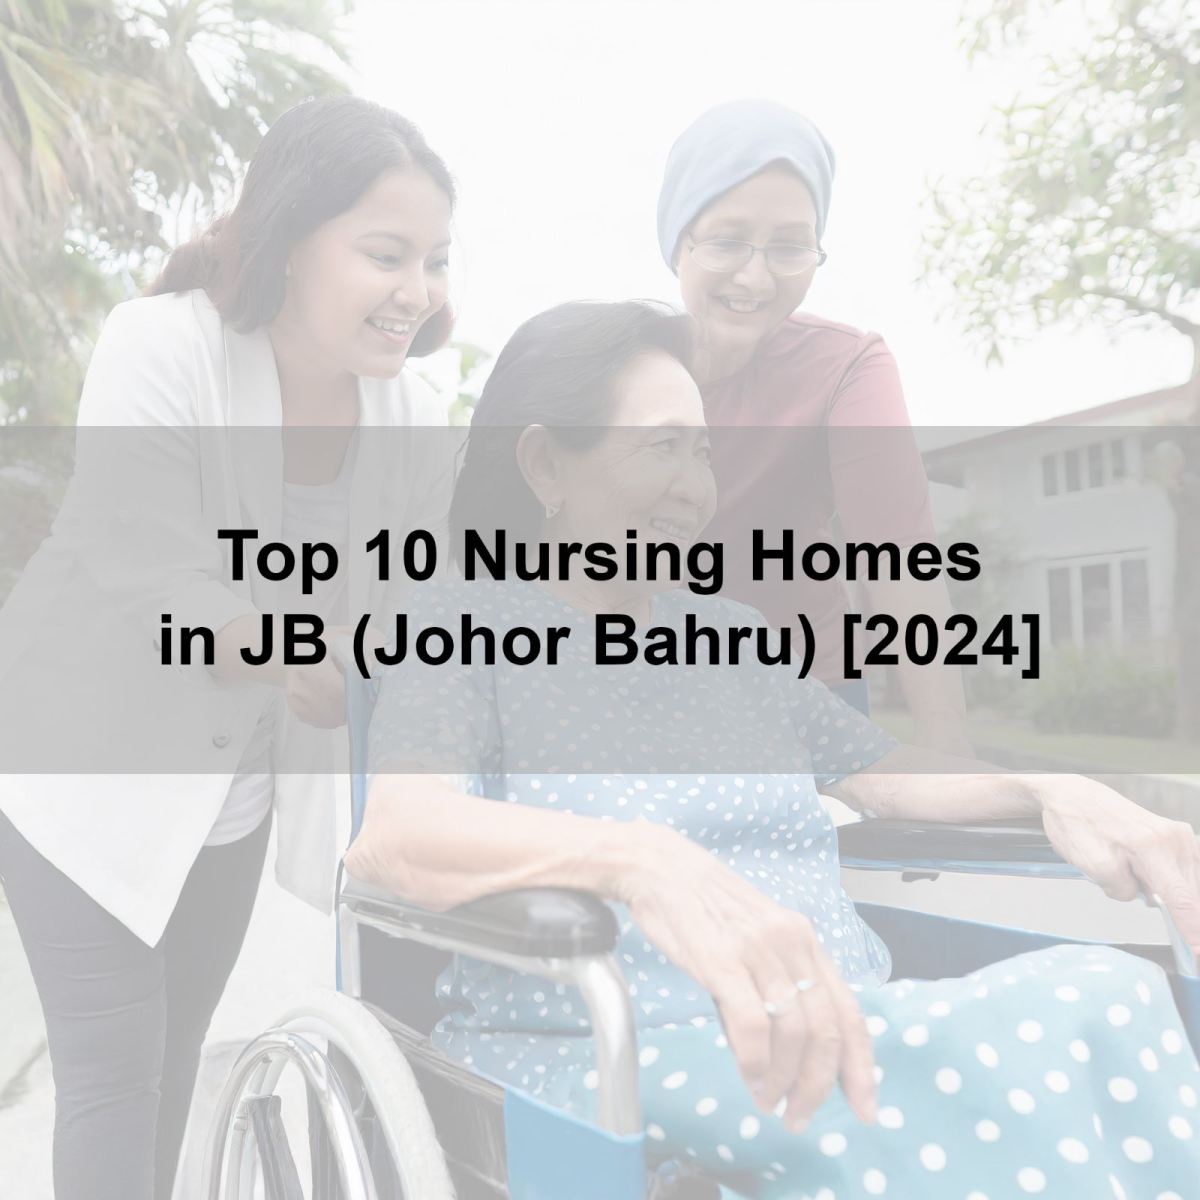 Top 10 Nursing Homes in JB (Johor Bahru) [2023]